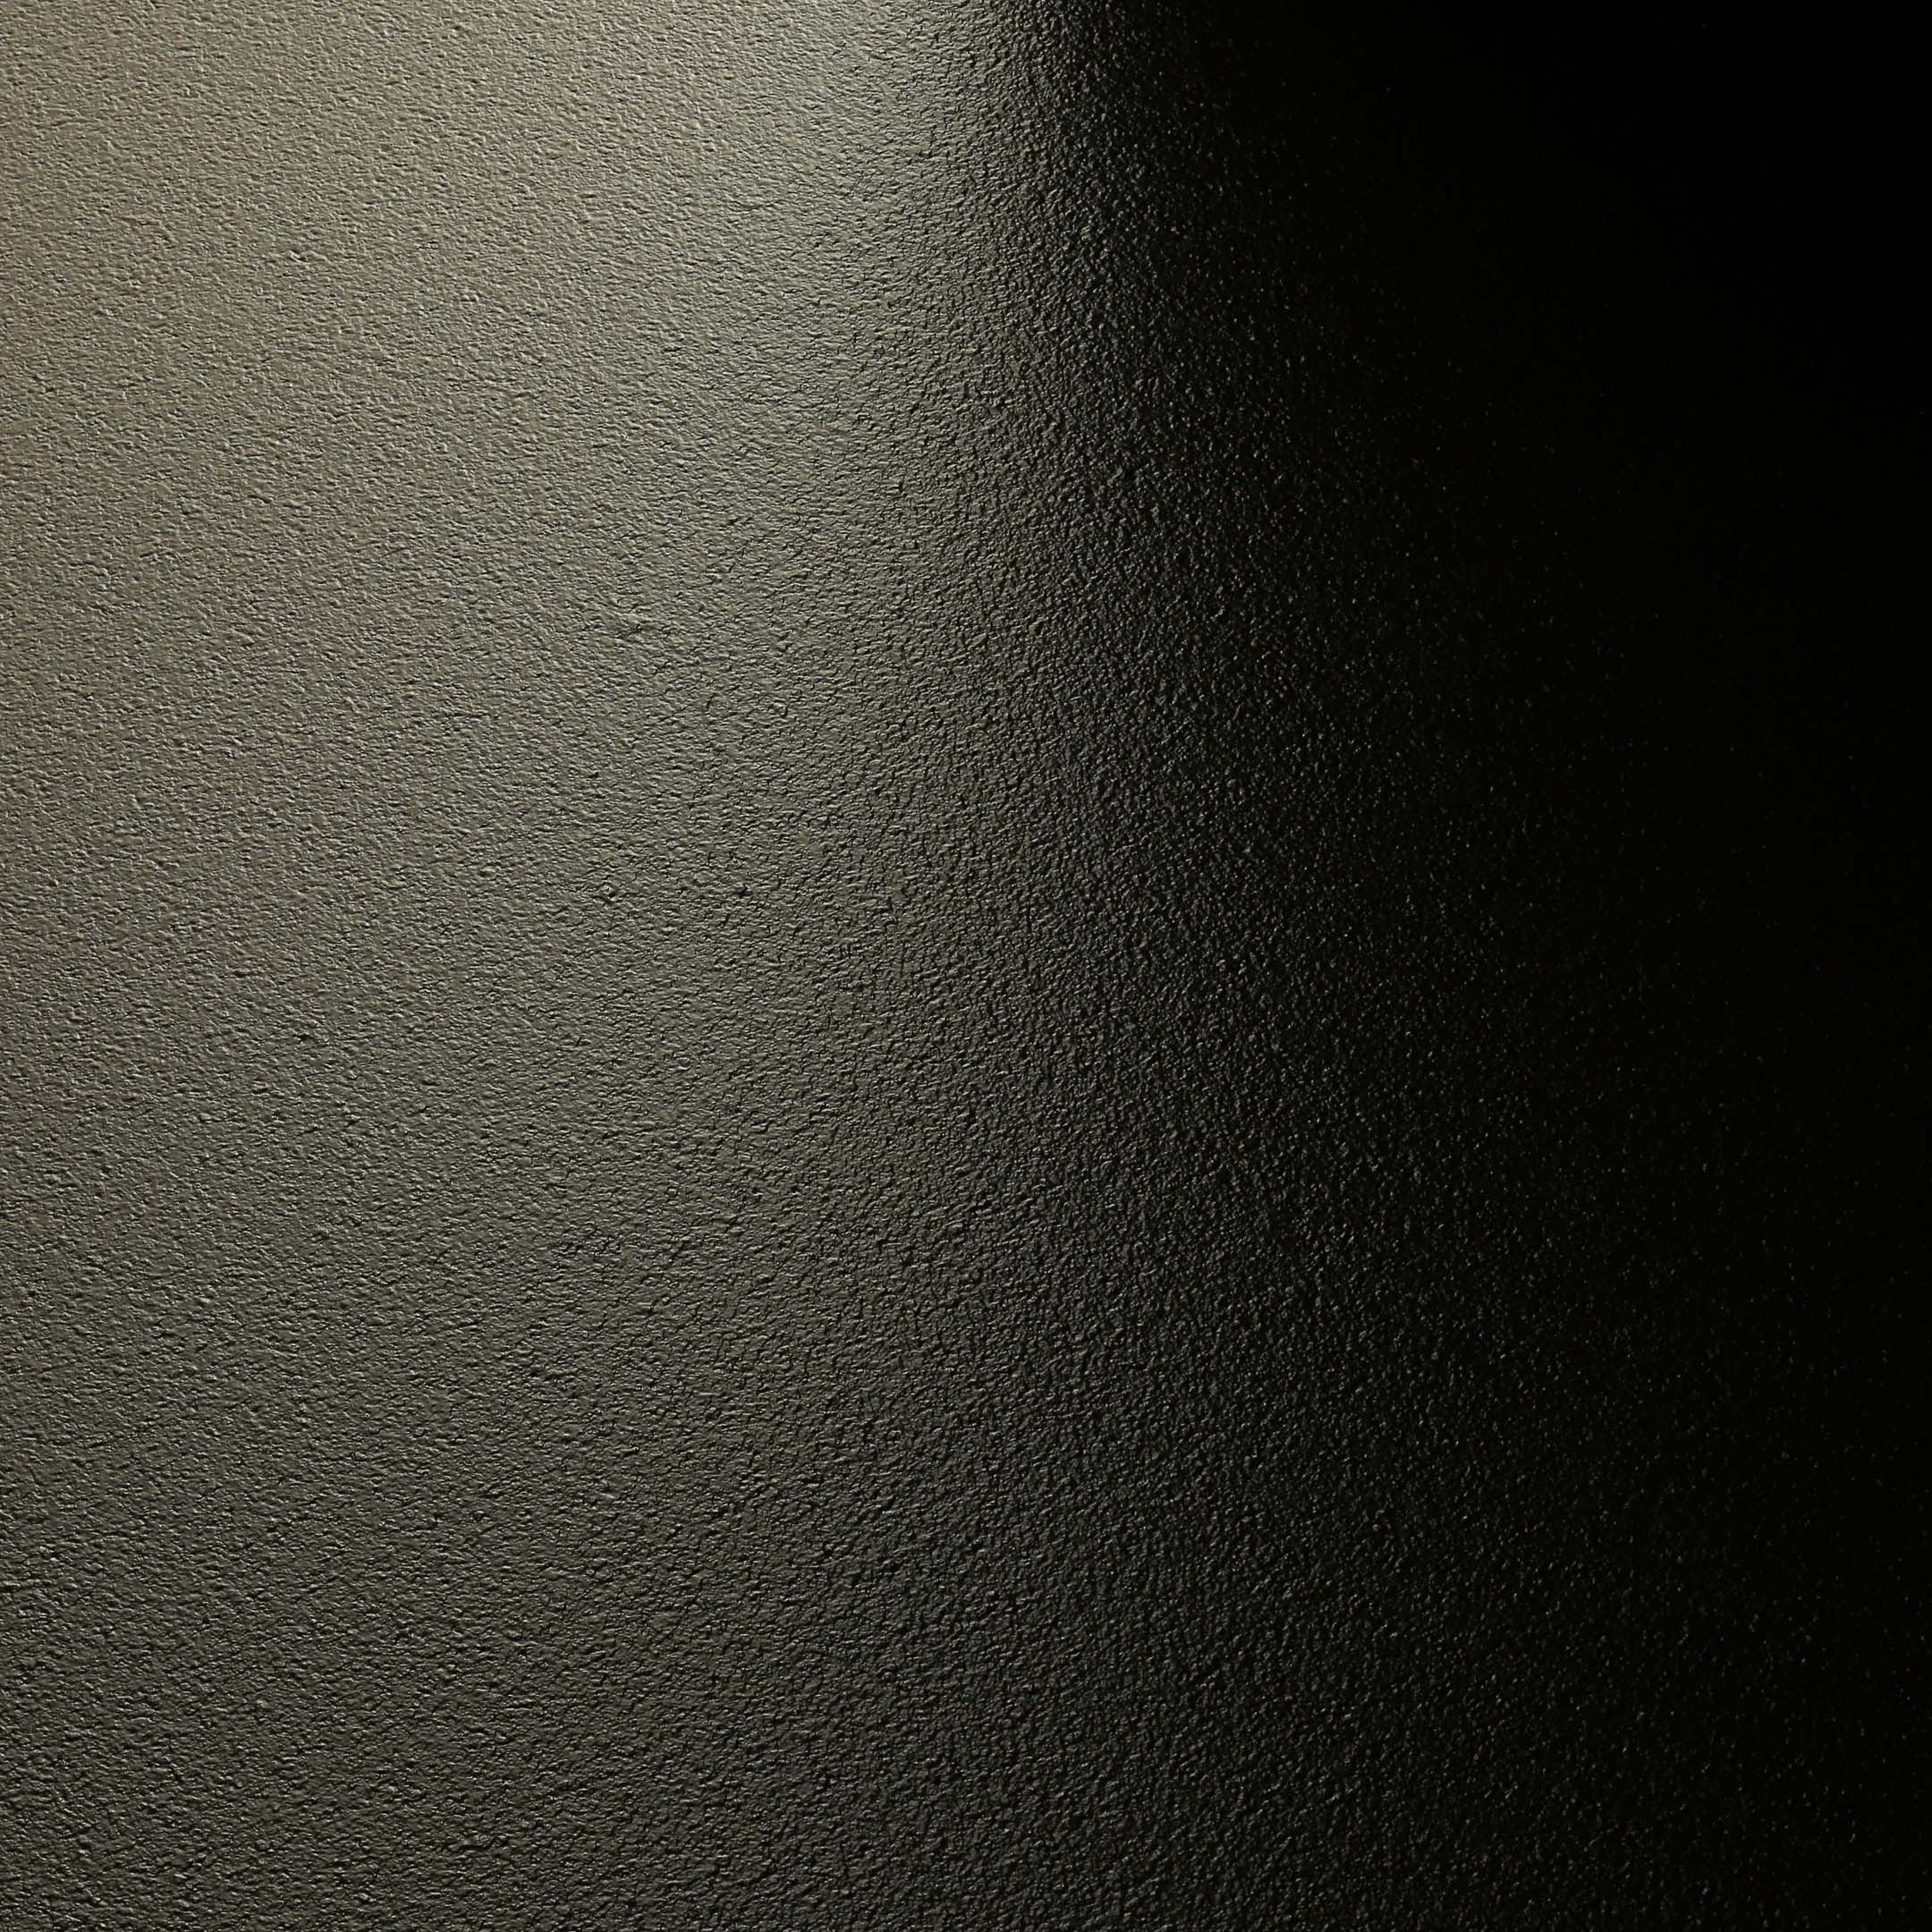 фото Клинкерная плитка керамин амстердам 4 коричневая 298x298x8 мм (15 шт.=1,33 кв.м)